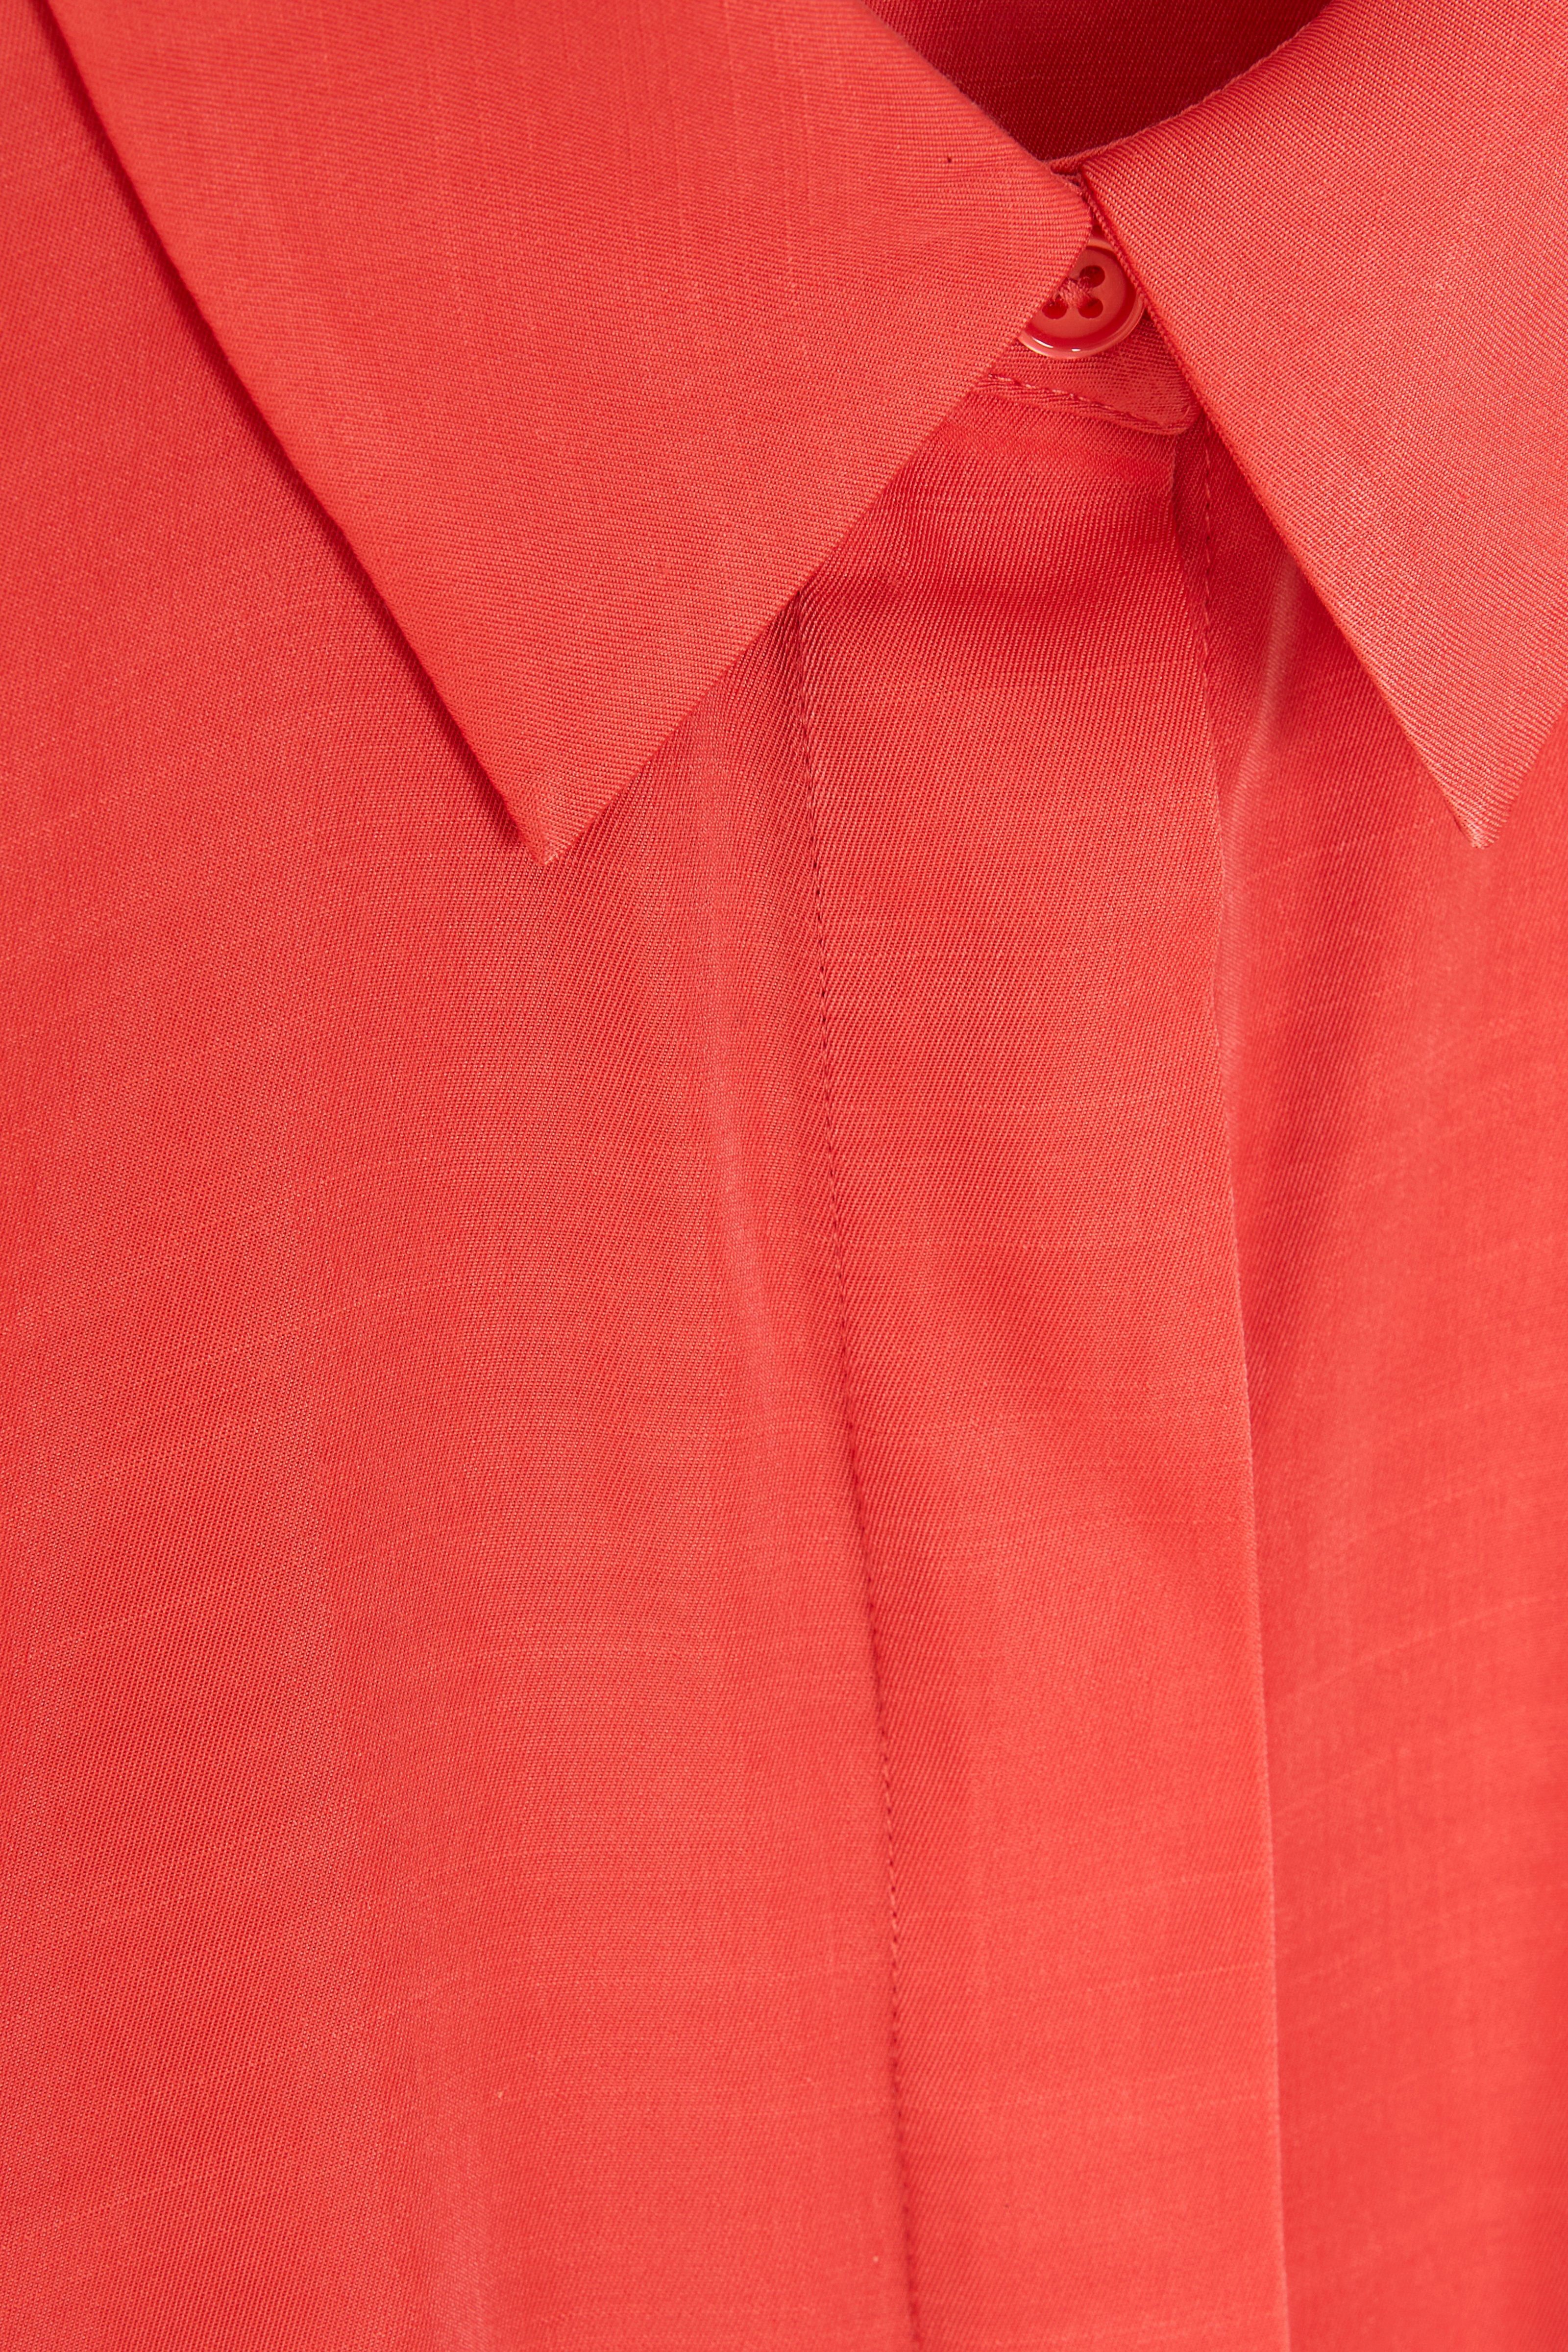 CKS Dames - RUTTENS - blouse short sleeves - pink